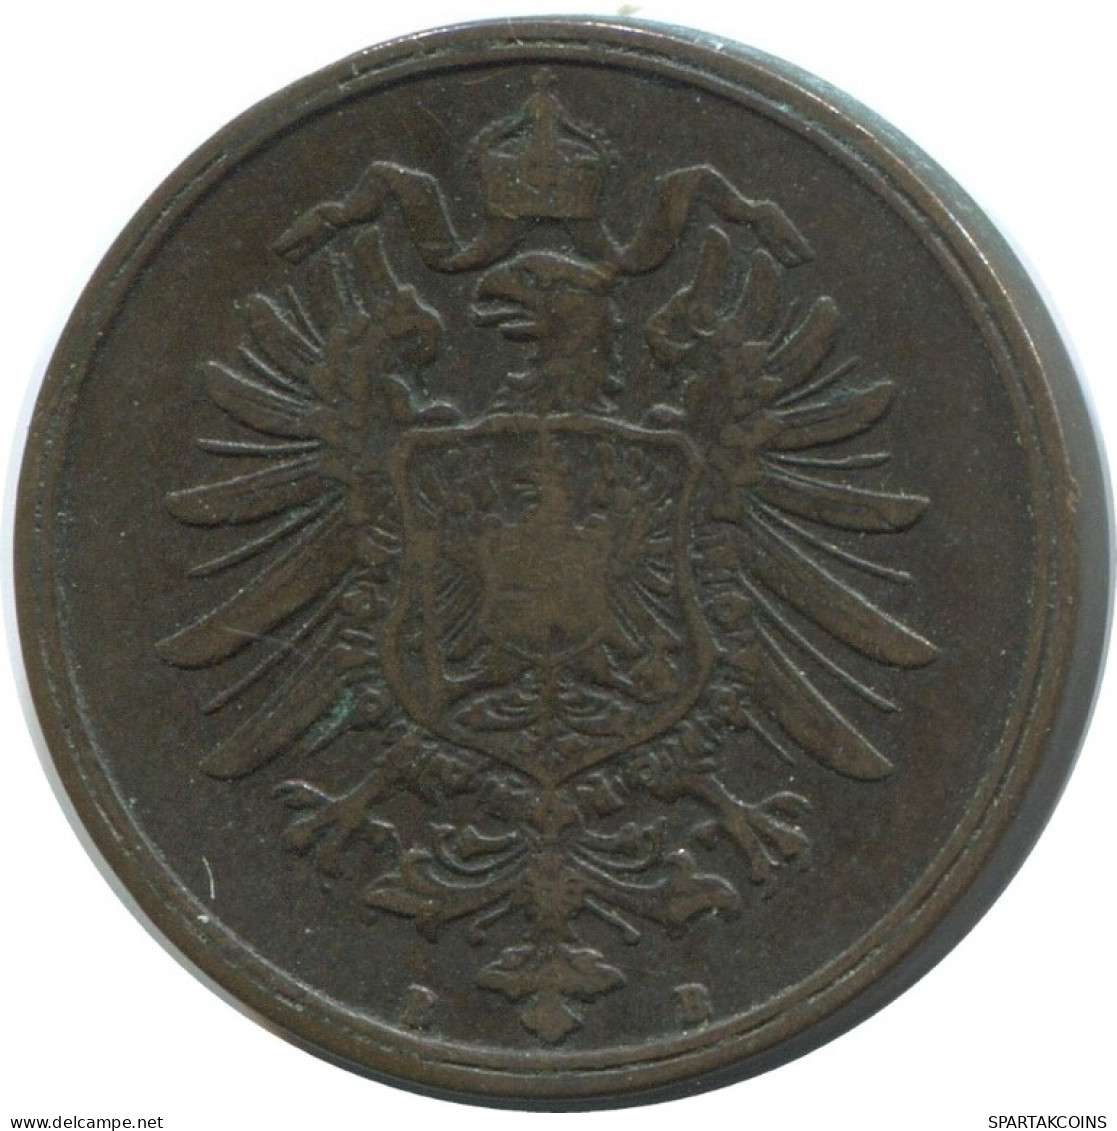 2 PFENNIG 1875 B GERMANY Coin #AE562.U.A - 2 Pfennig